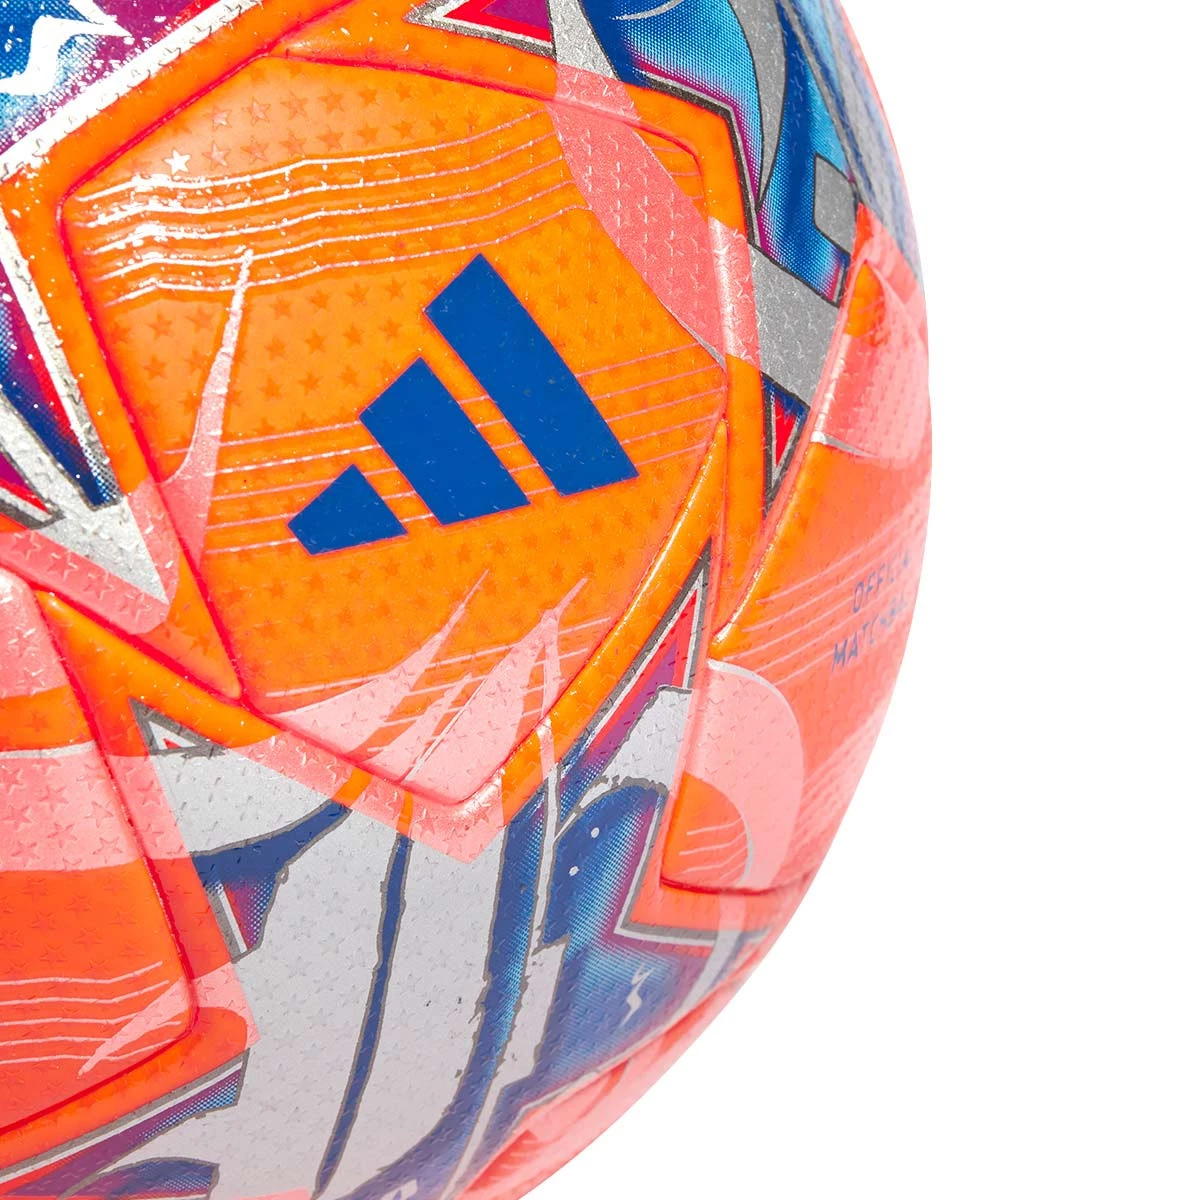 Balón adidas Champions 2023 2024 League J350 talla 4